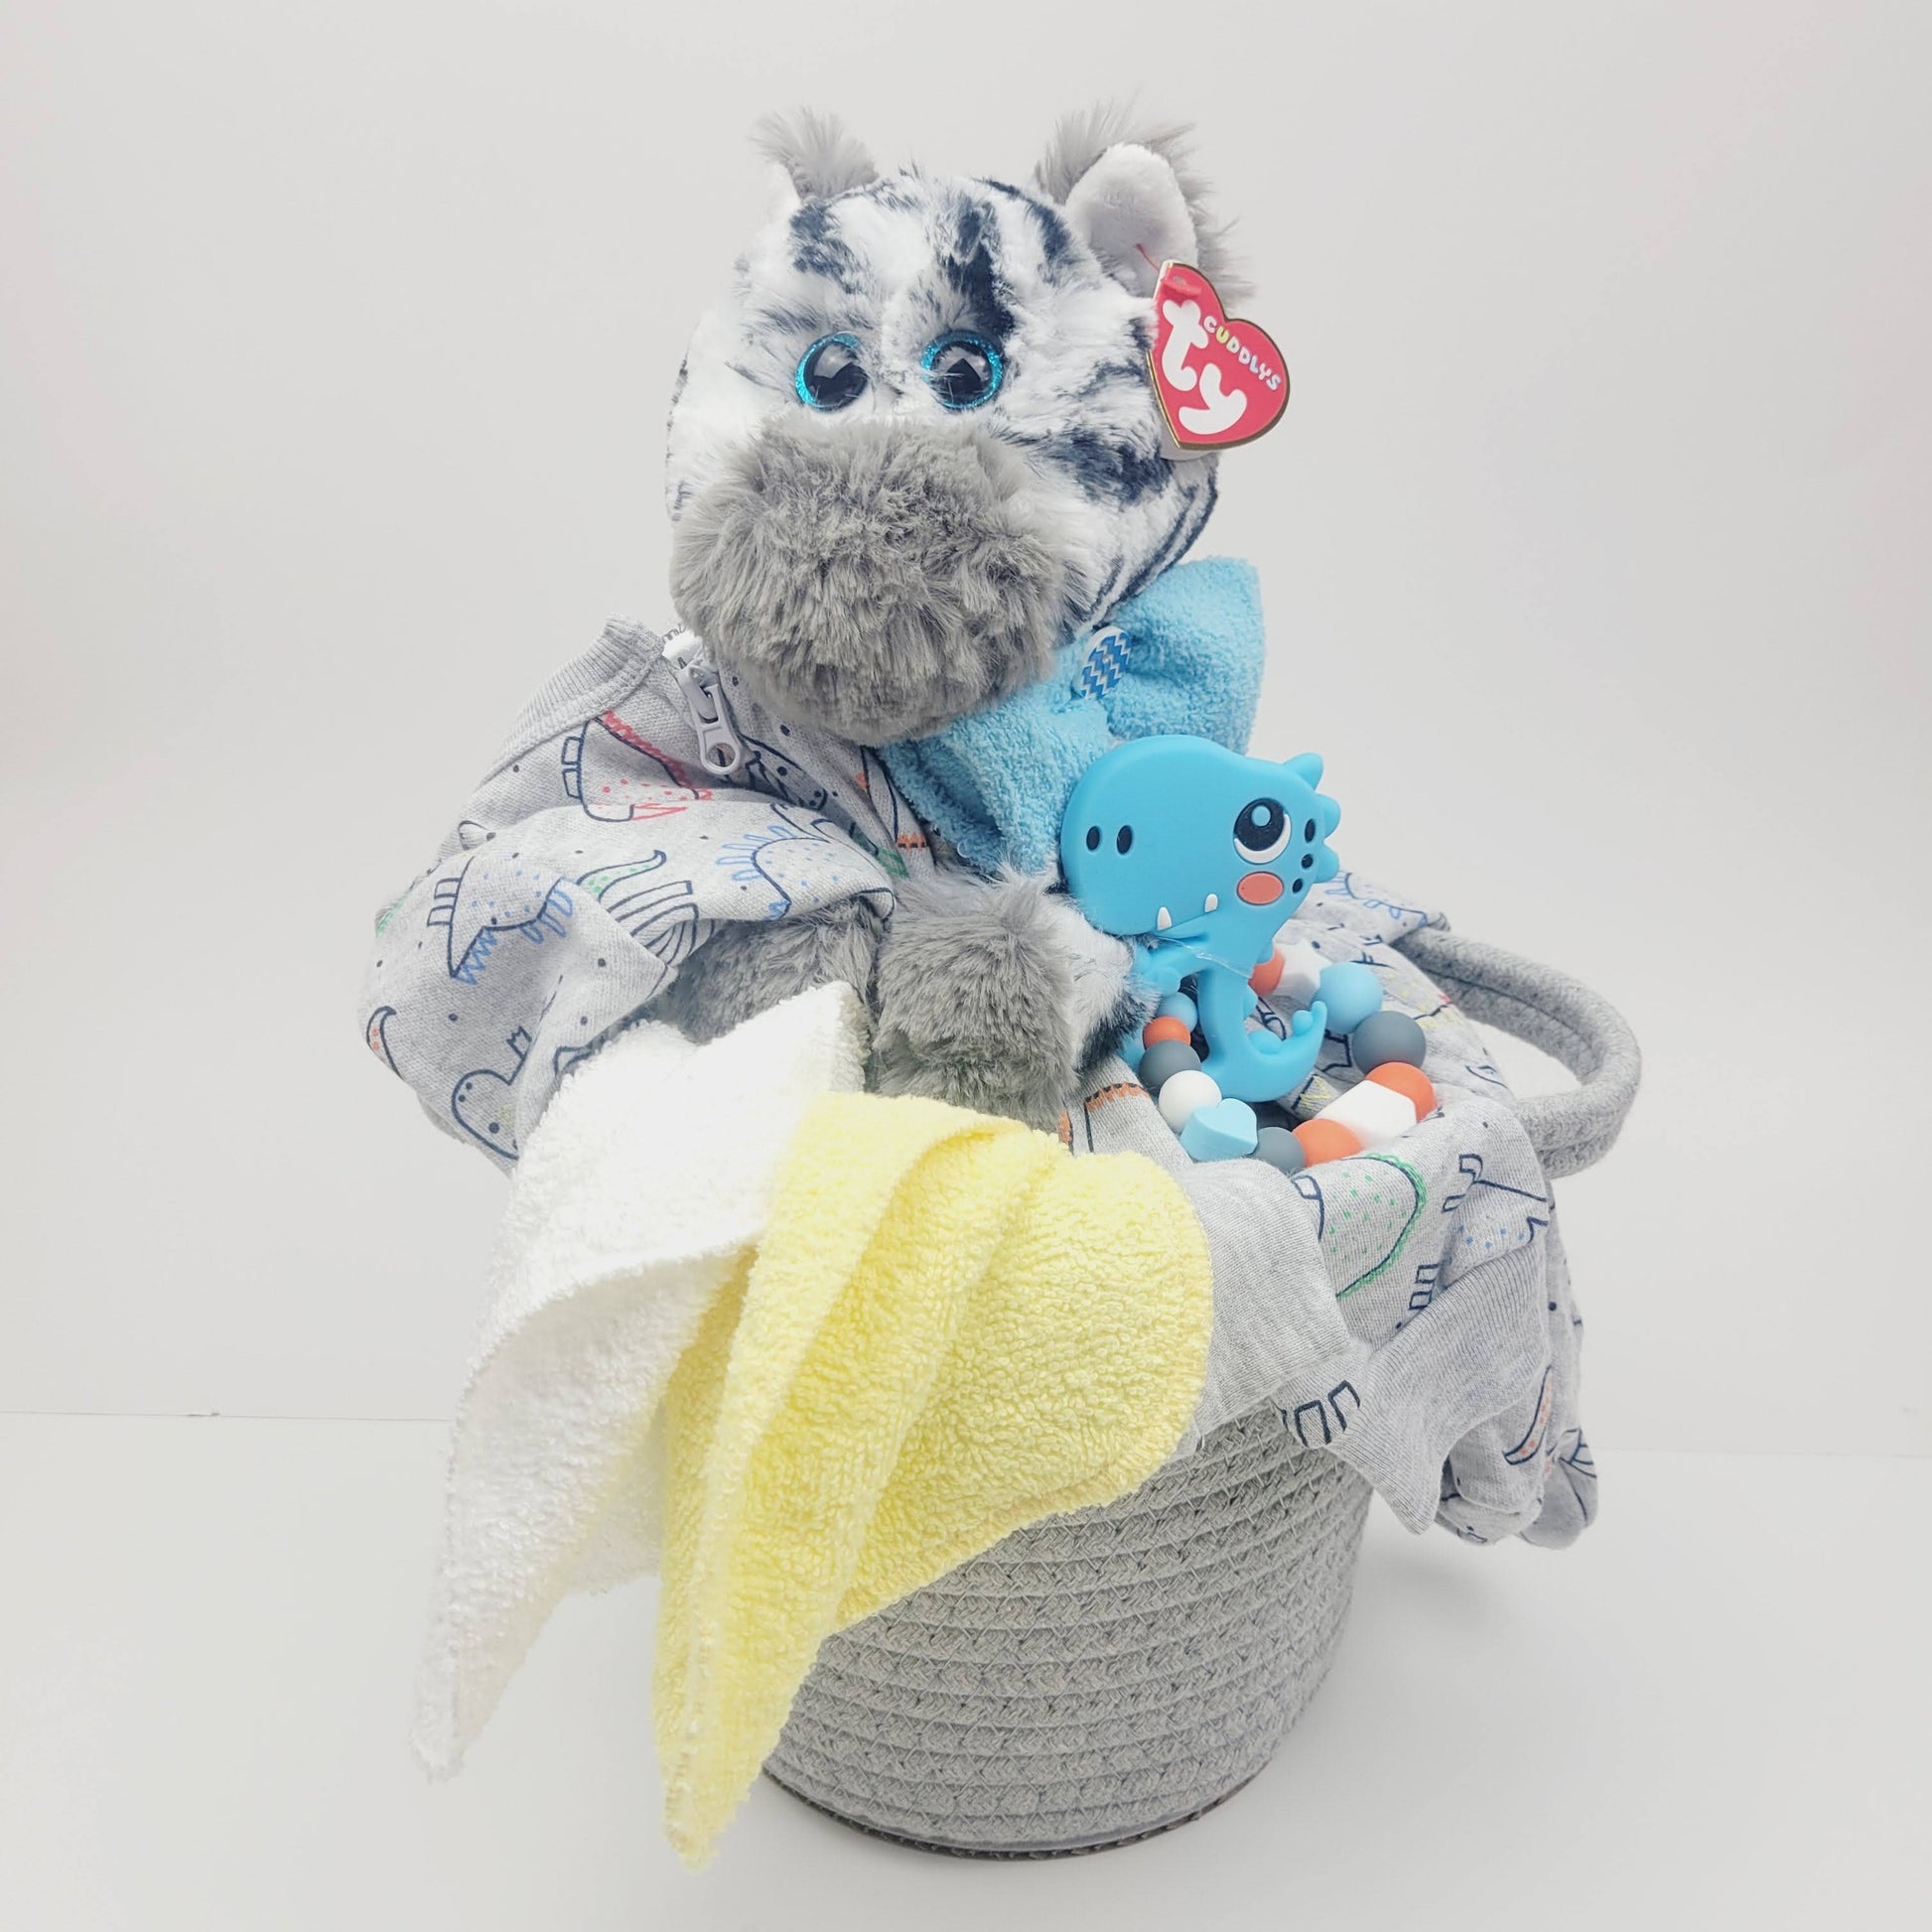 Ensemble cadeau pour babyshower pour bébé. Dans un panier gris on retrouve un toutou zèbre avec un pyjama gris avec des dinosaures, un jouet de dentition avec un dino  bleu. 